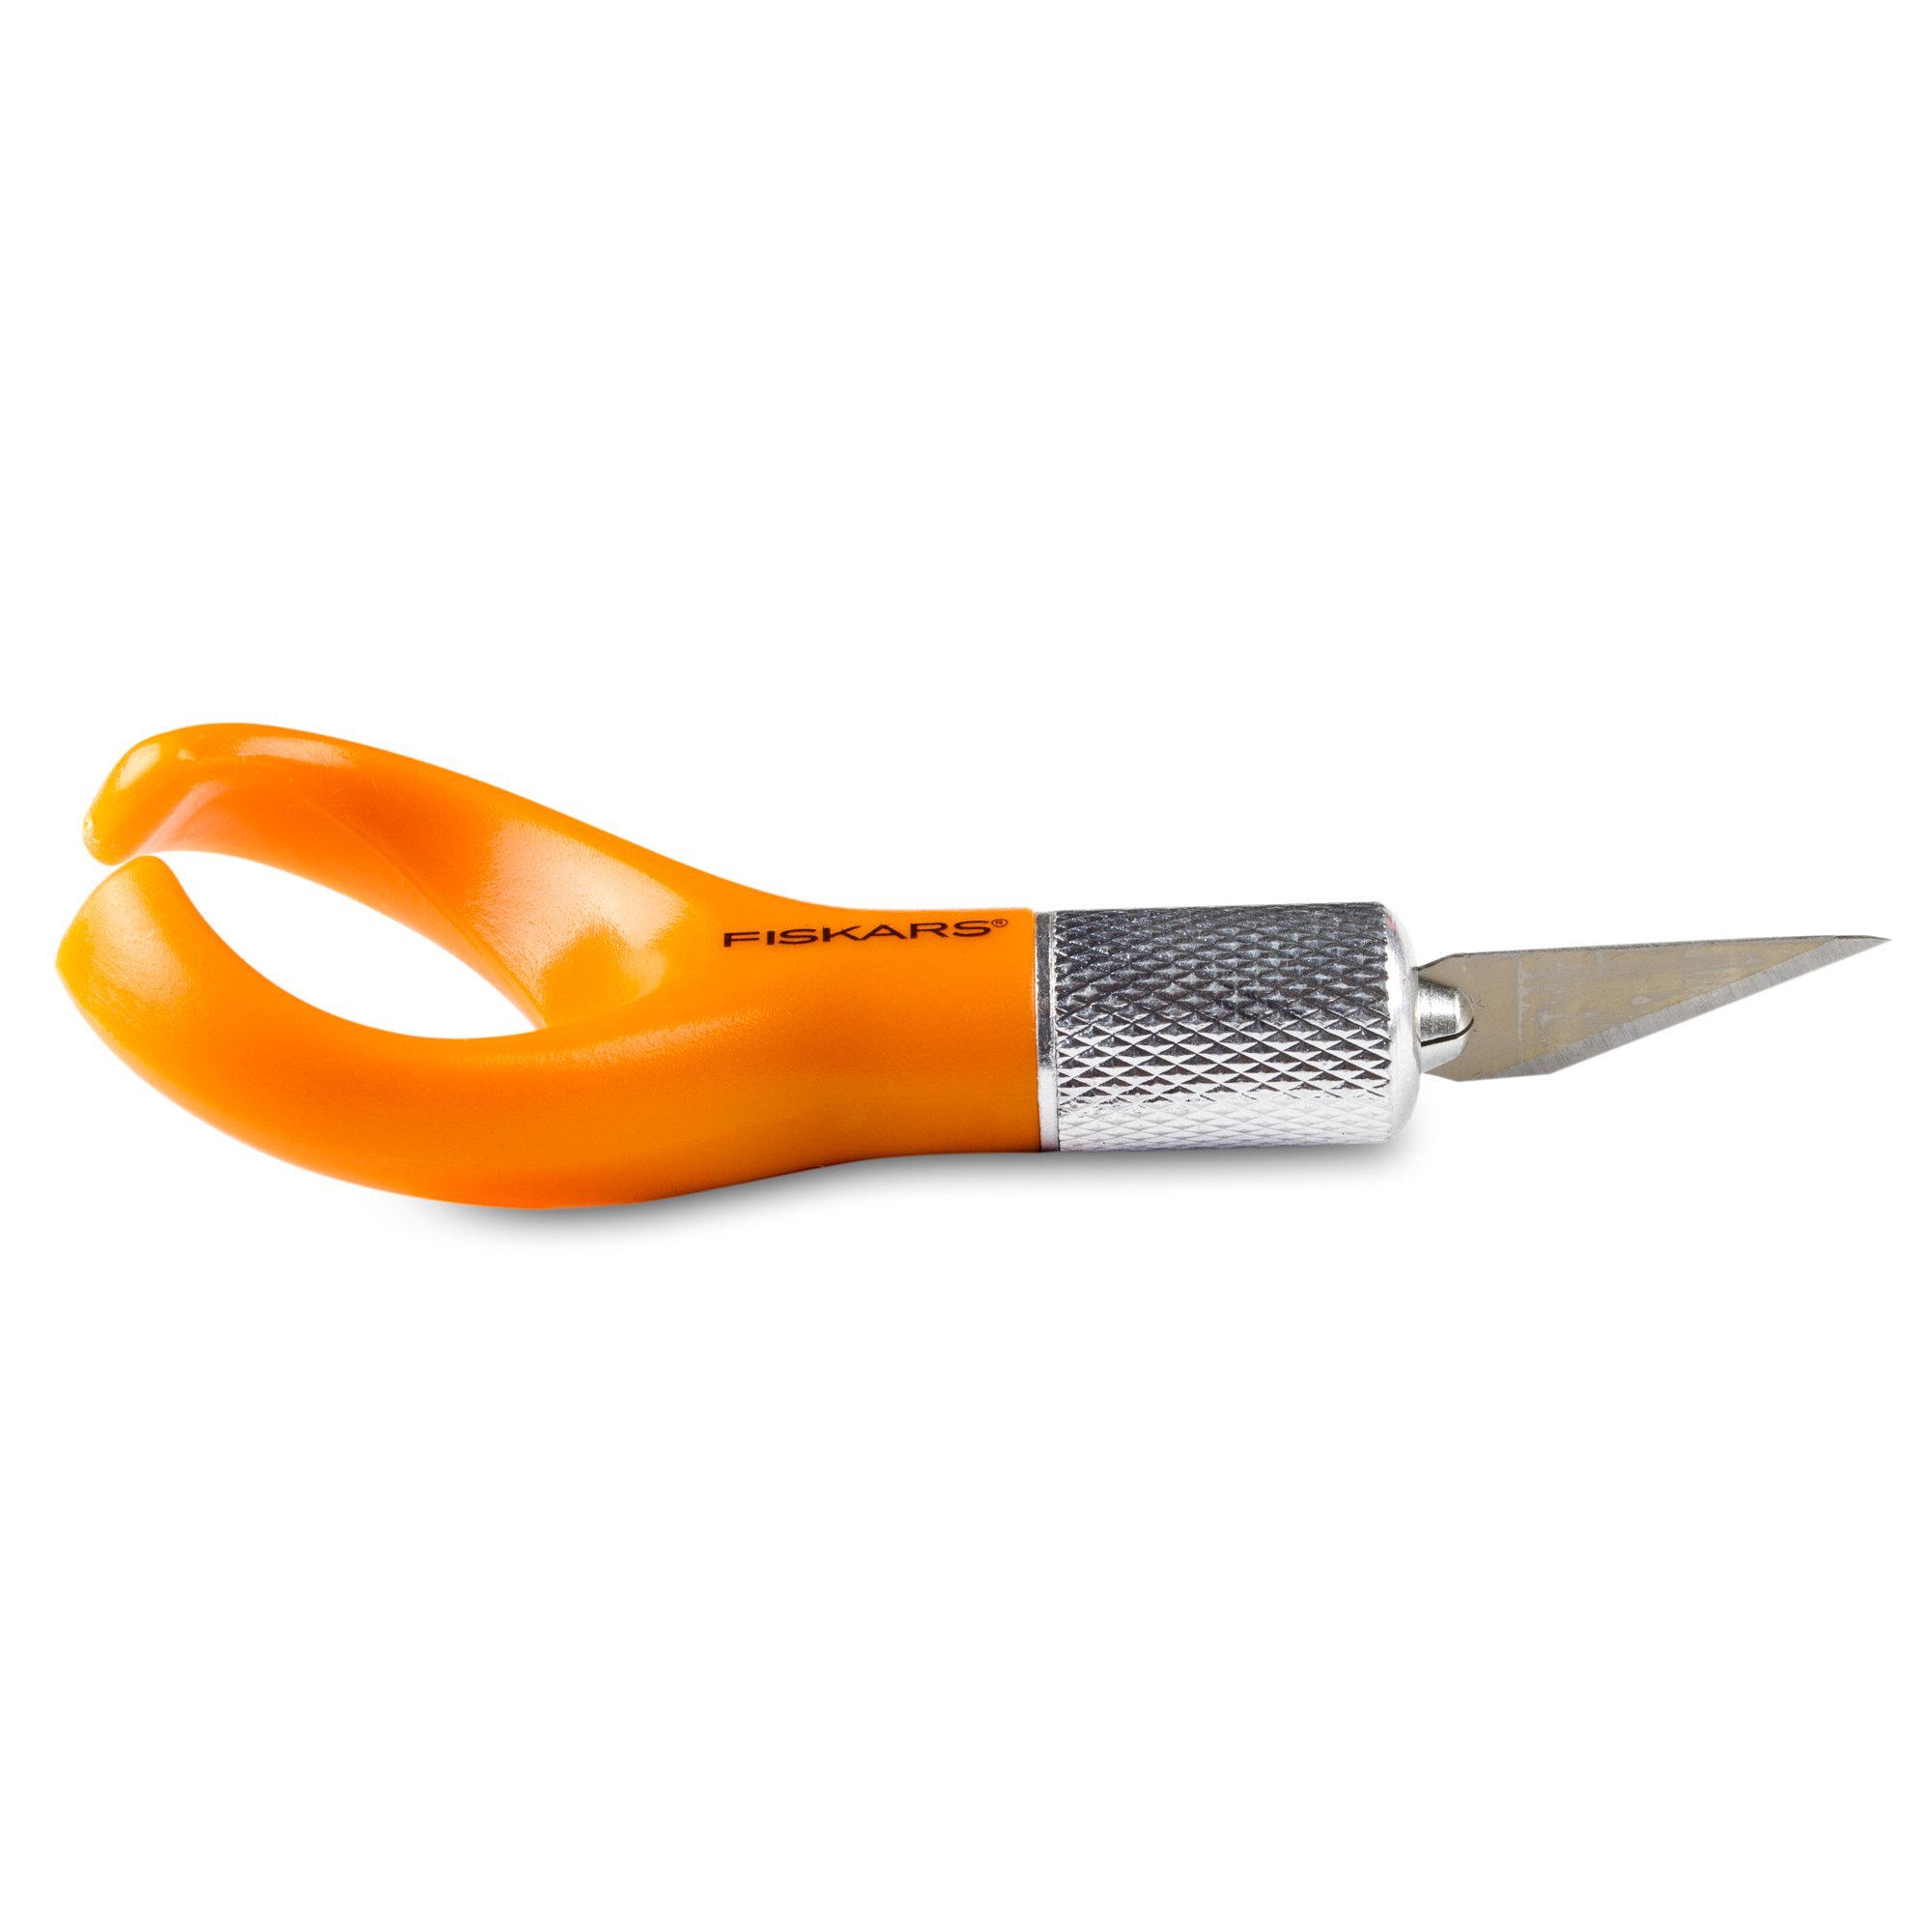 fiskars-orange-knife-2.jpg